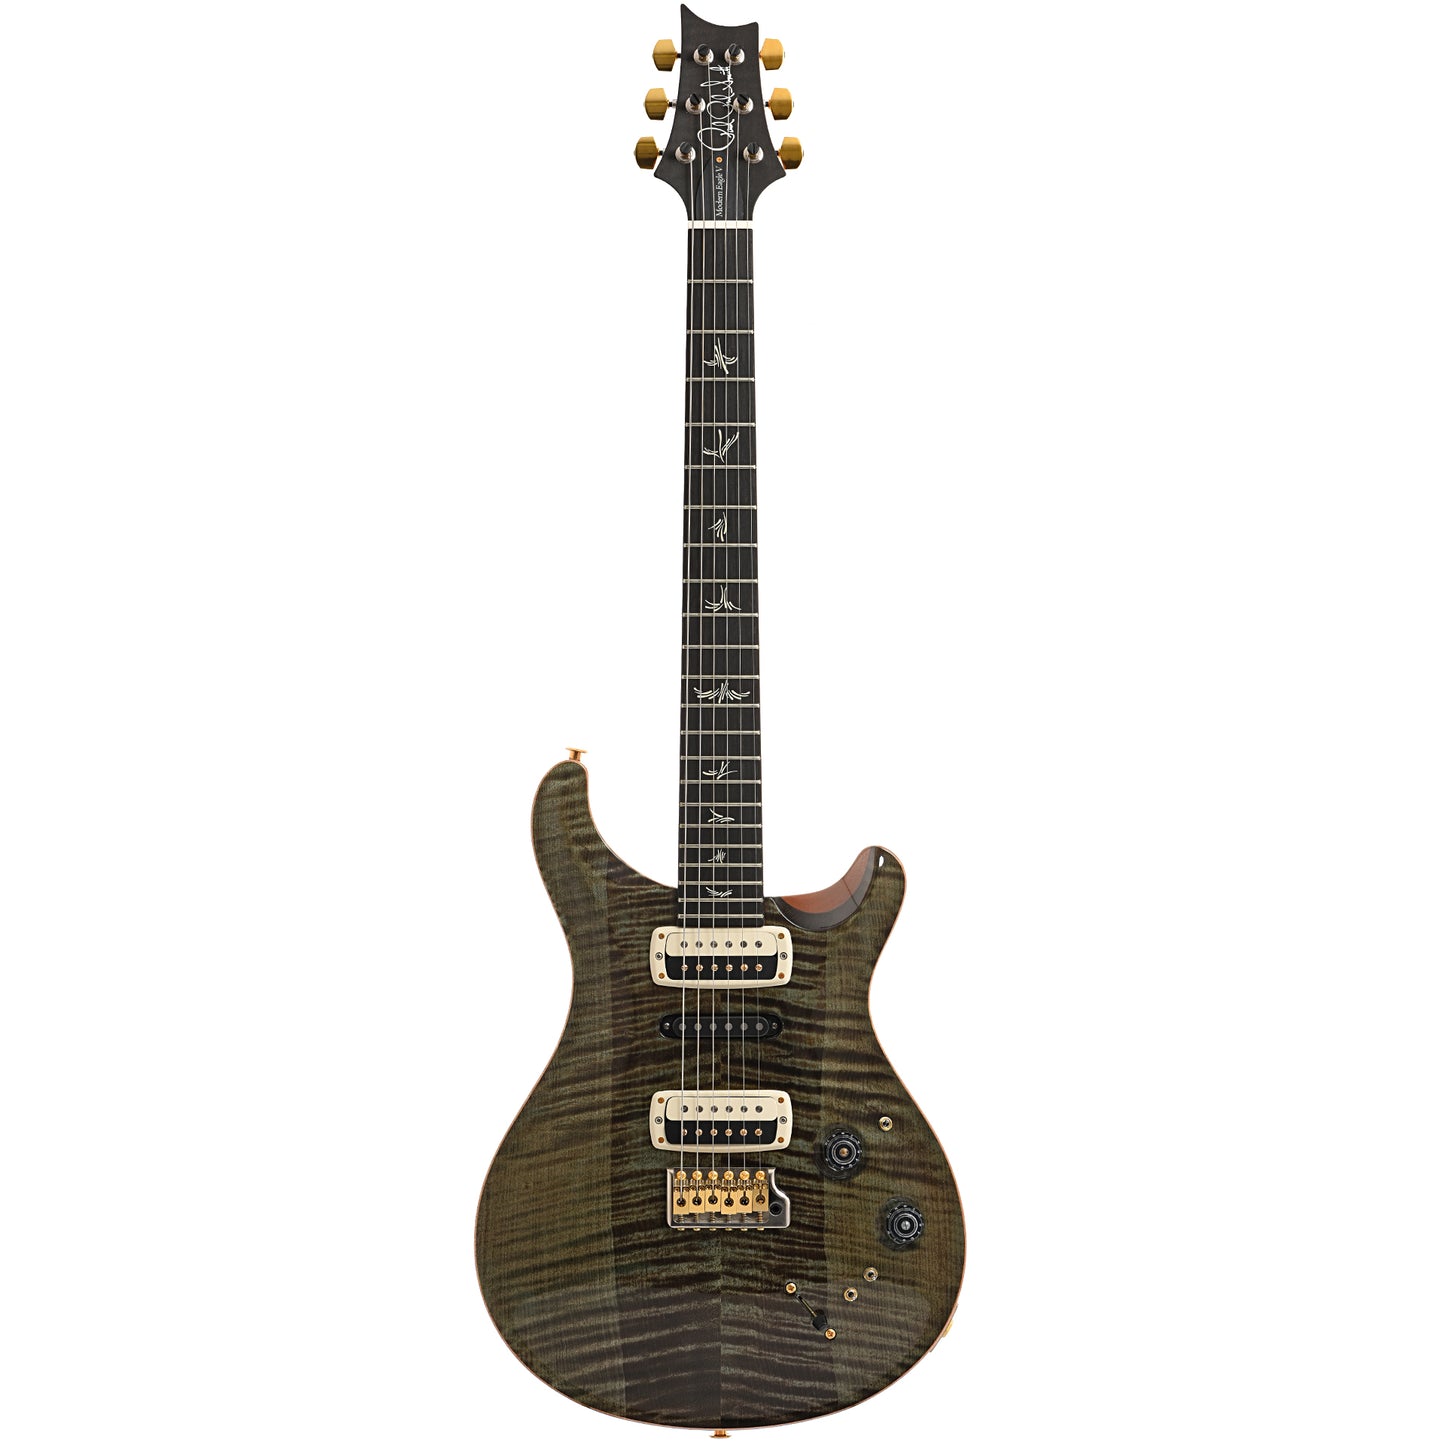 Full back and side of PRS Modern Eagle V guitar